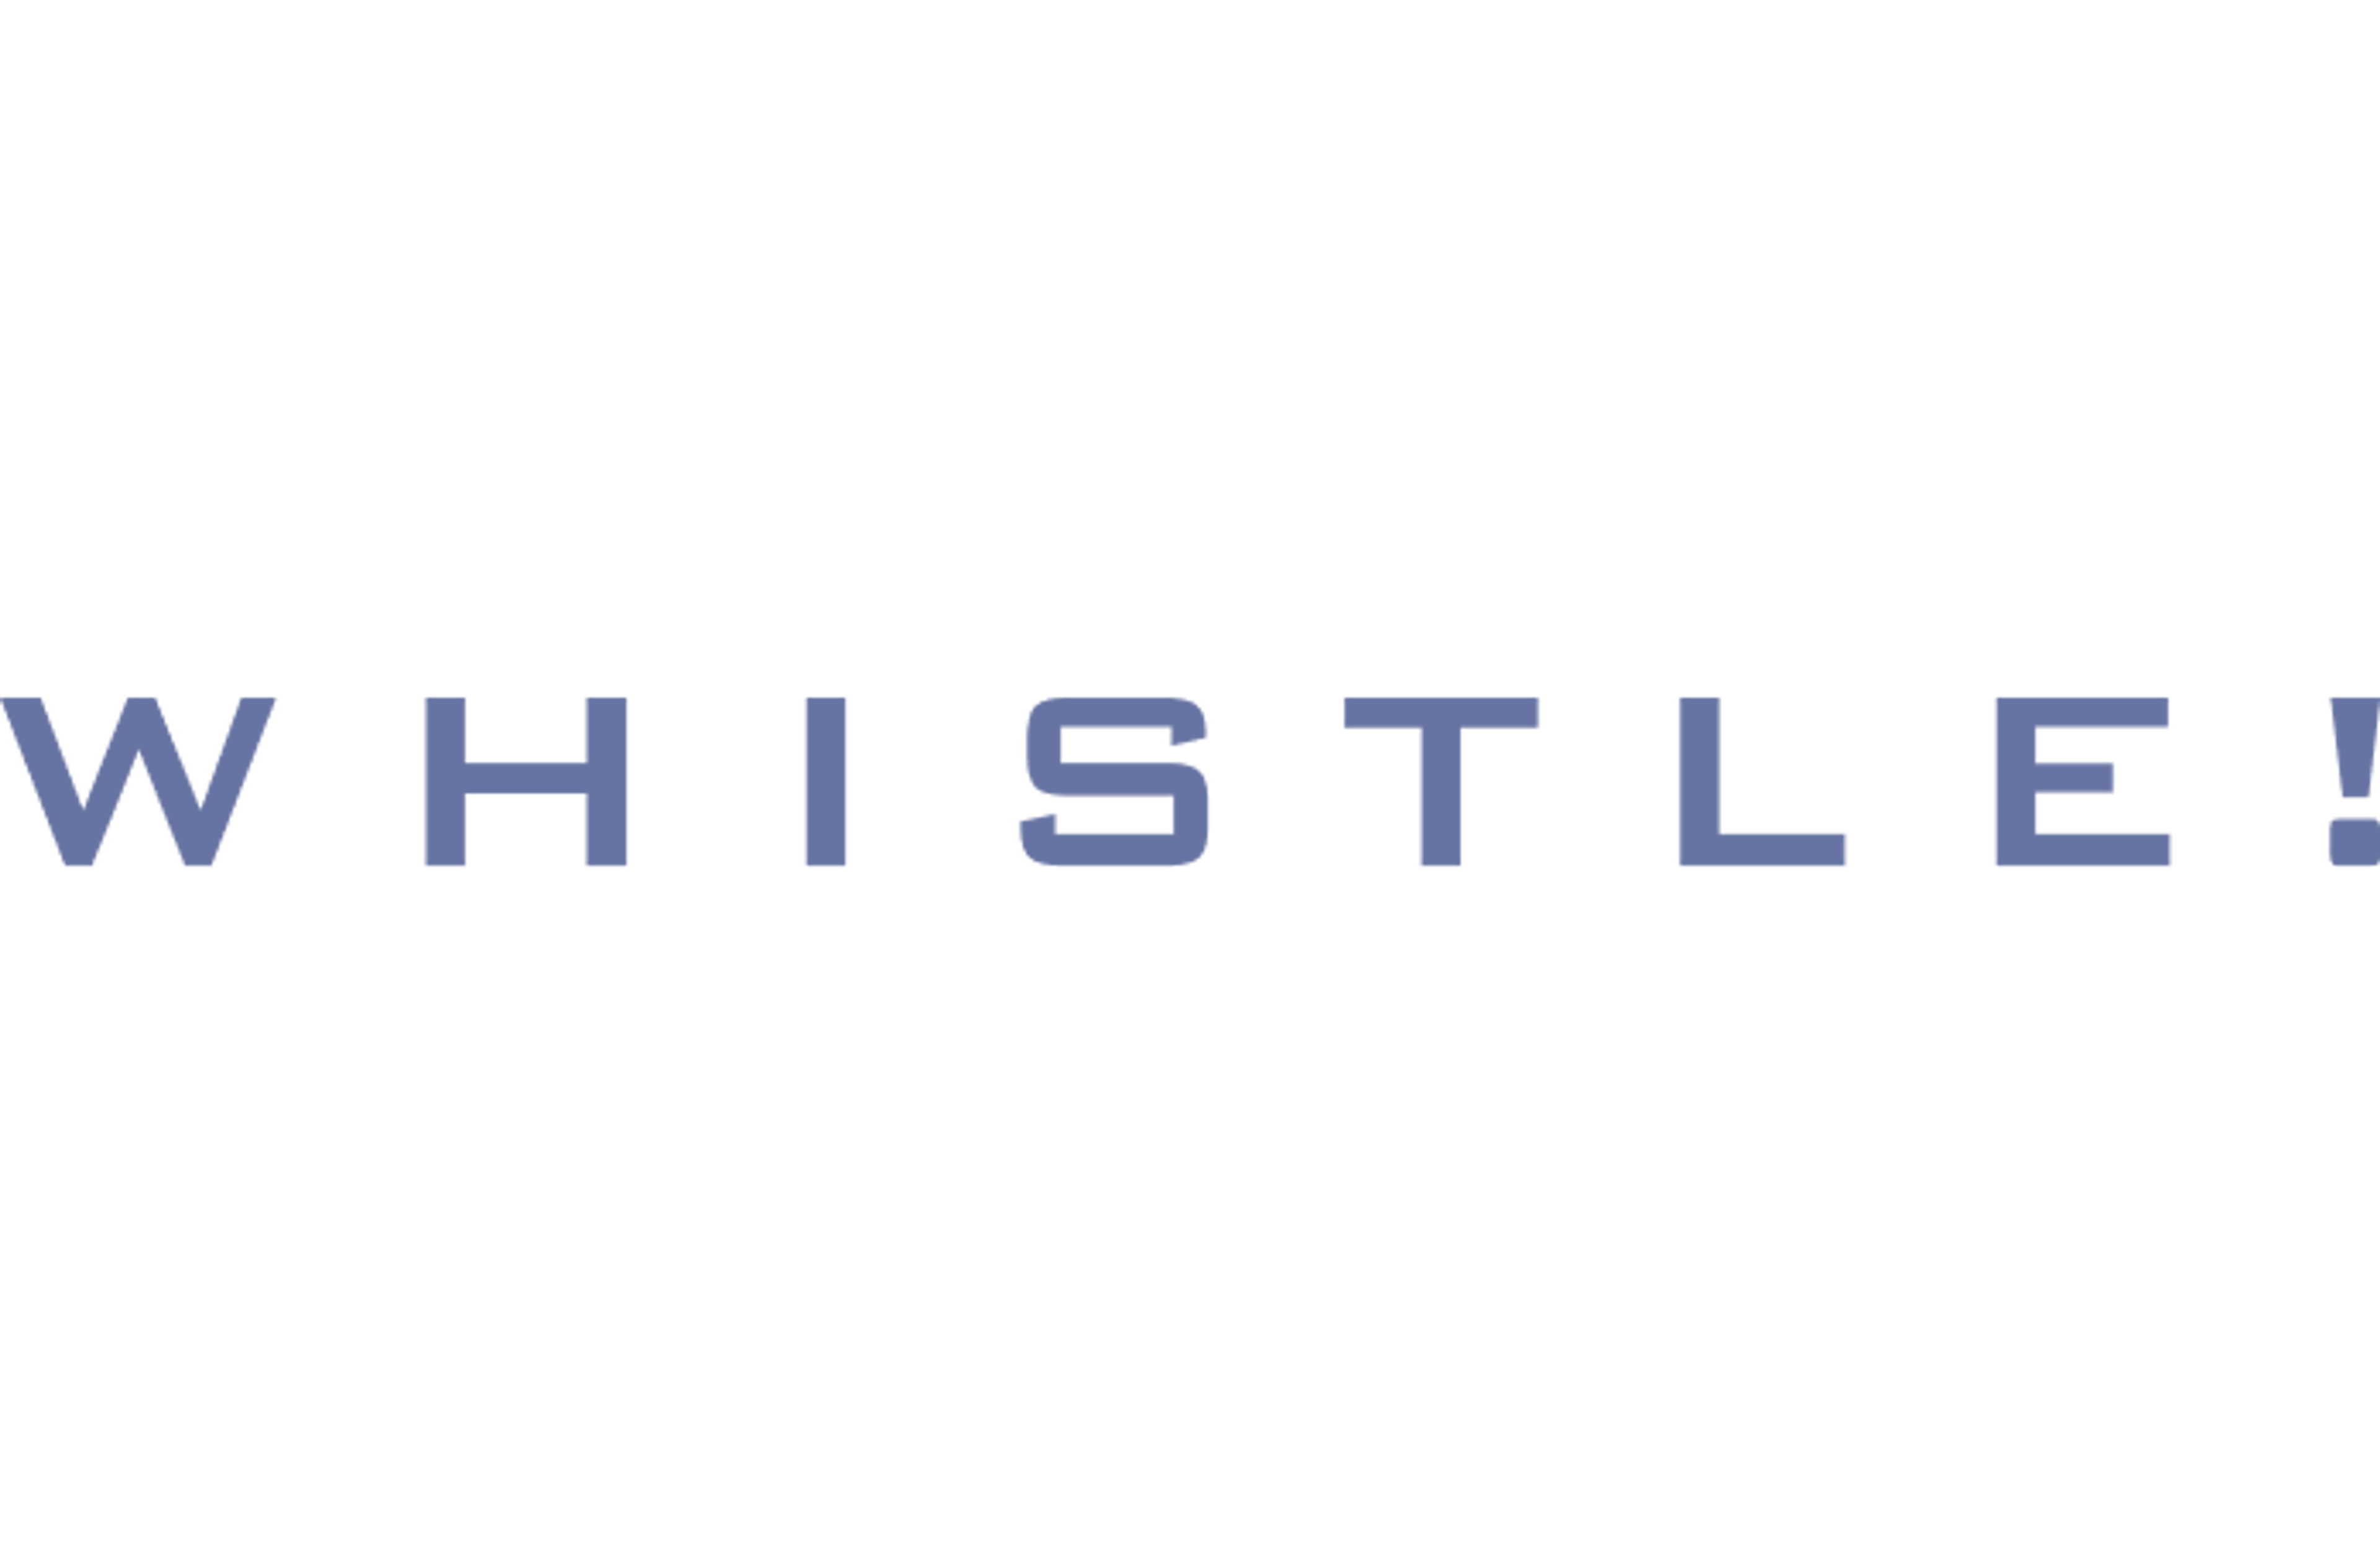 Whistle logo